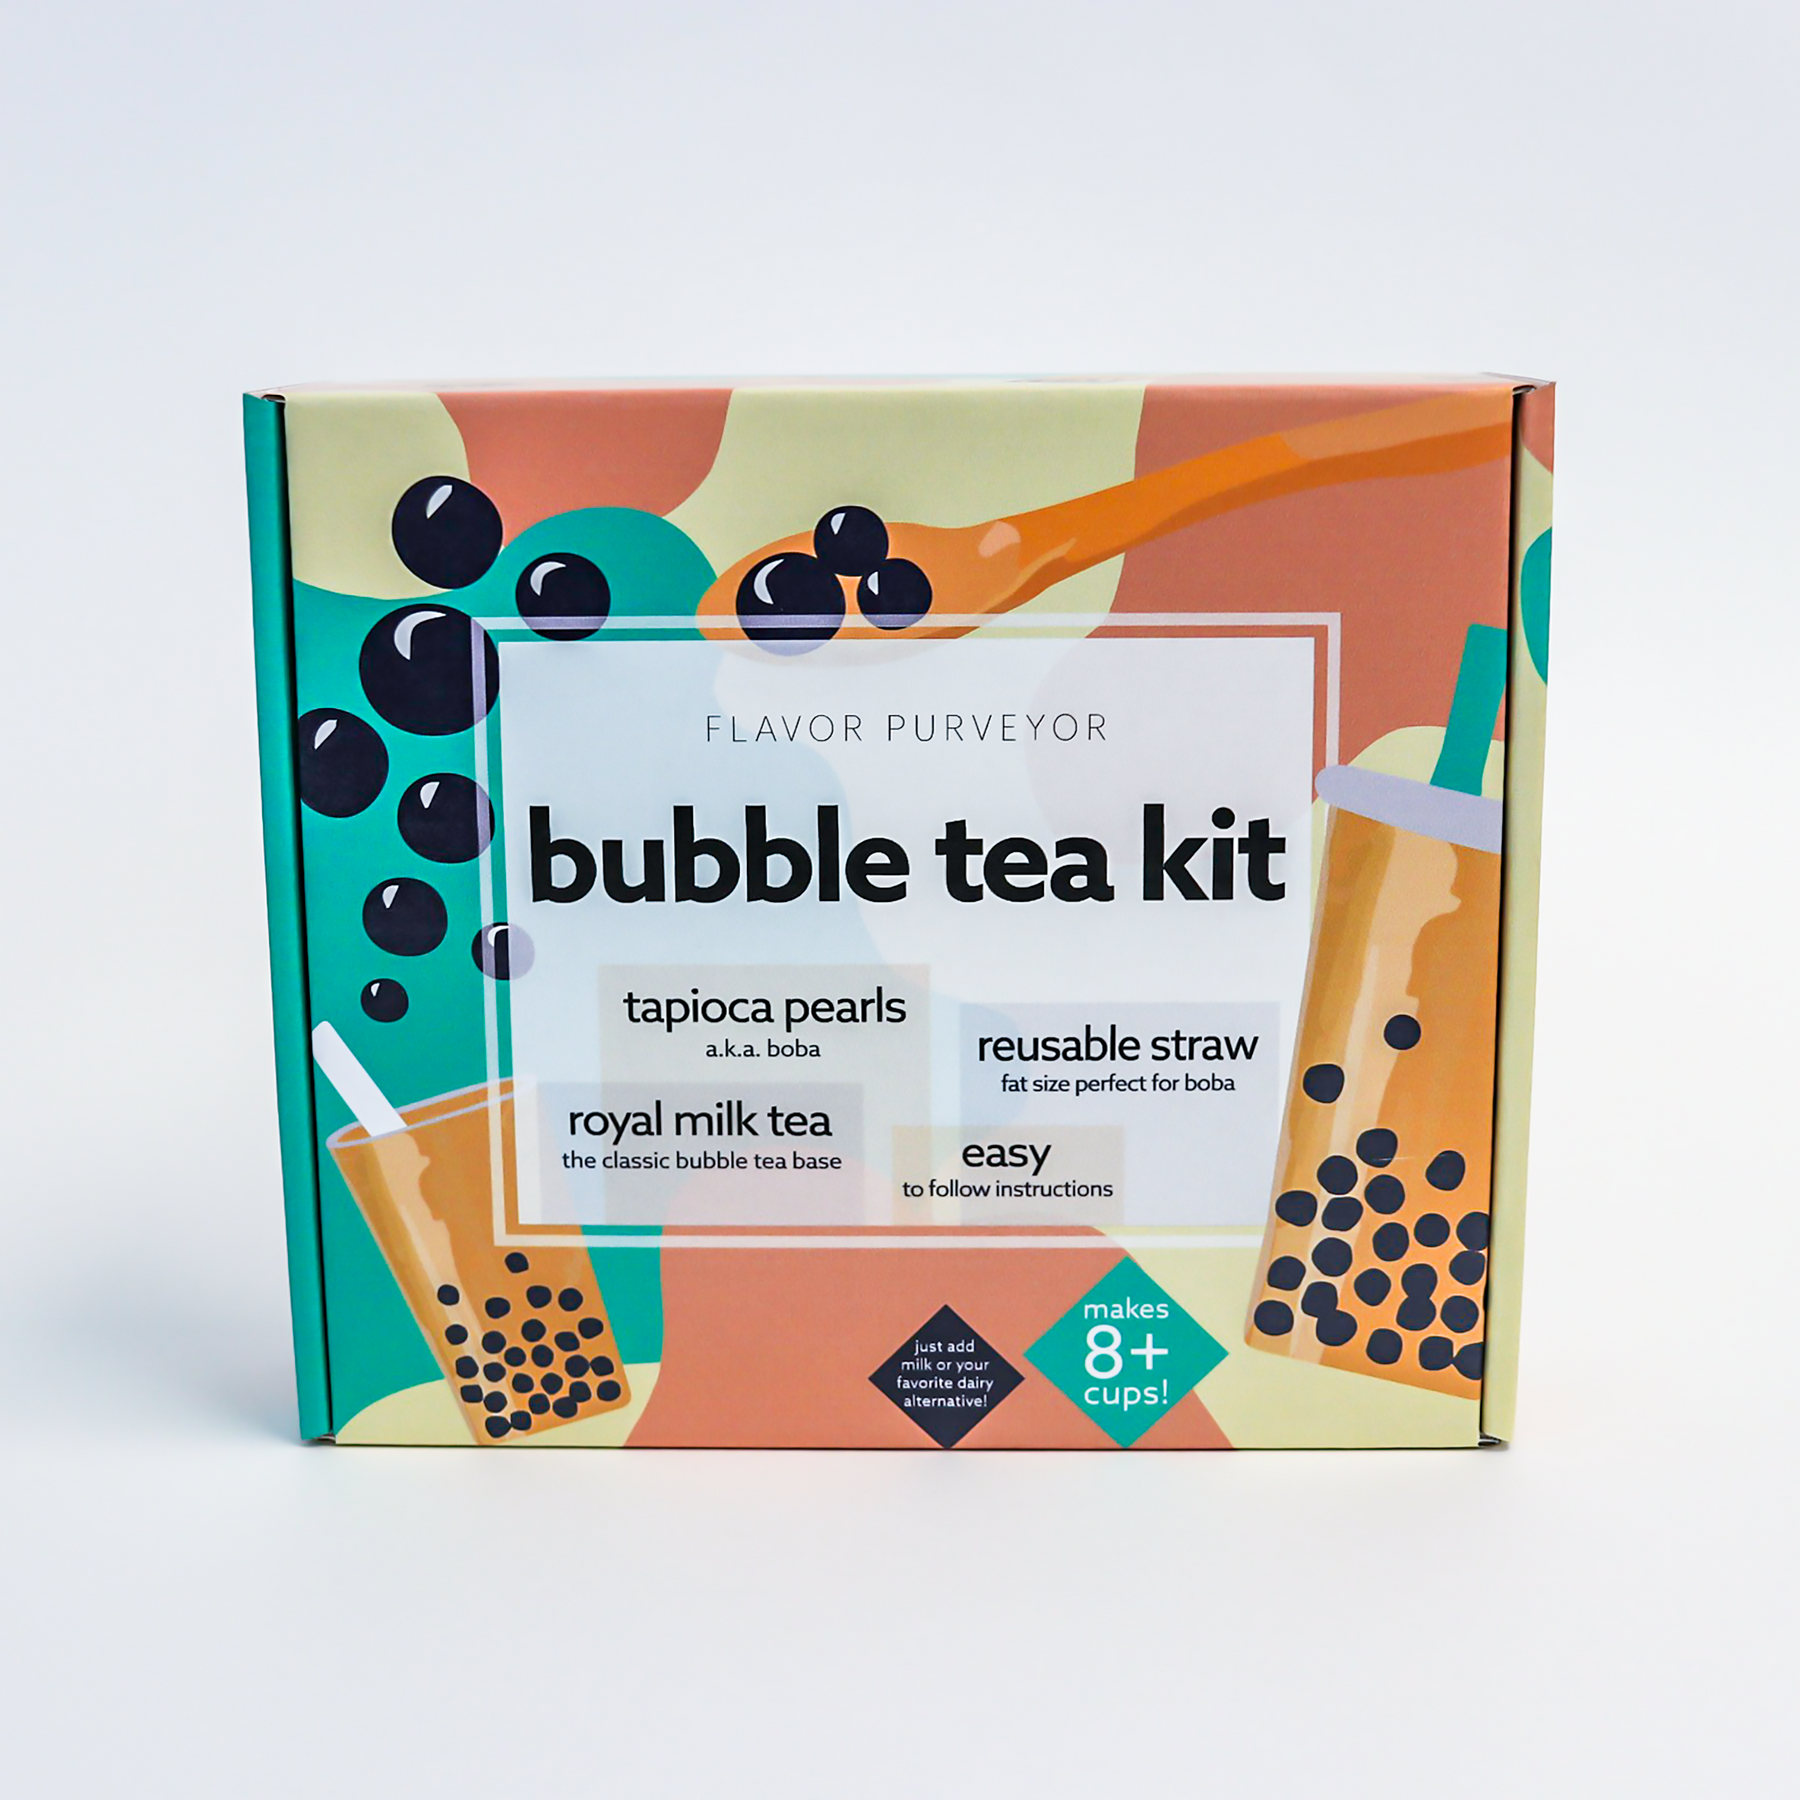 DIY Bubble Tea Kit | 4 Servings, Flavor: Red Guava